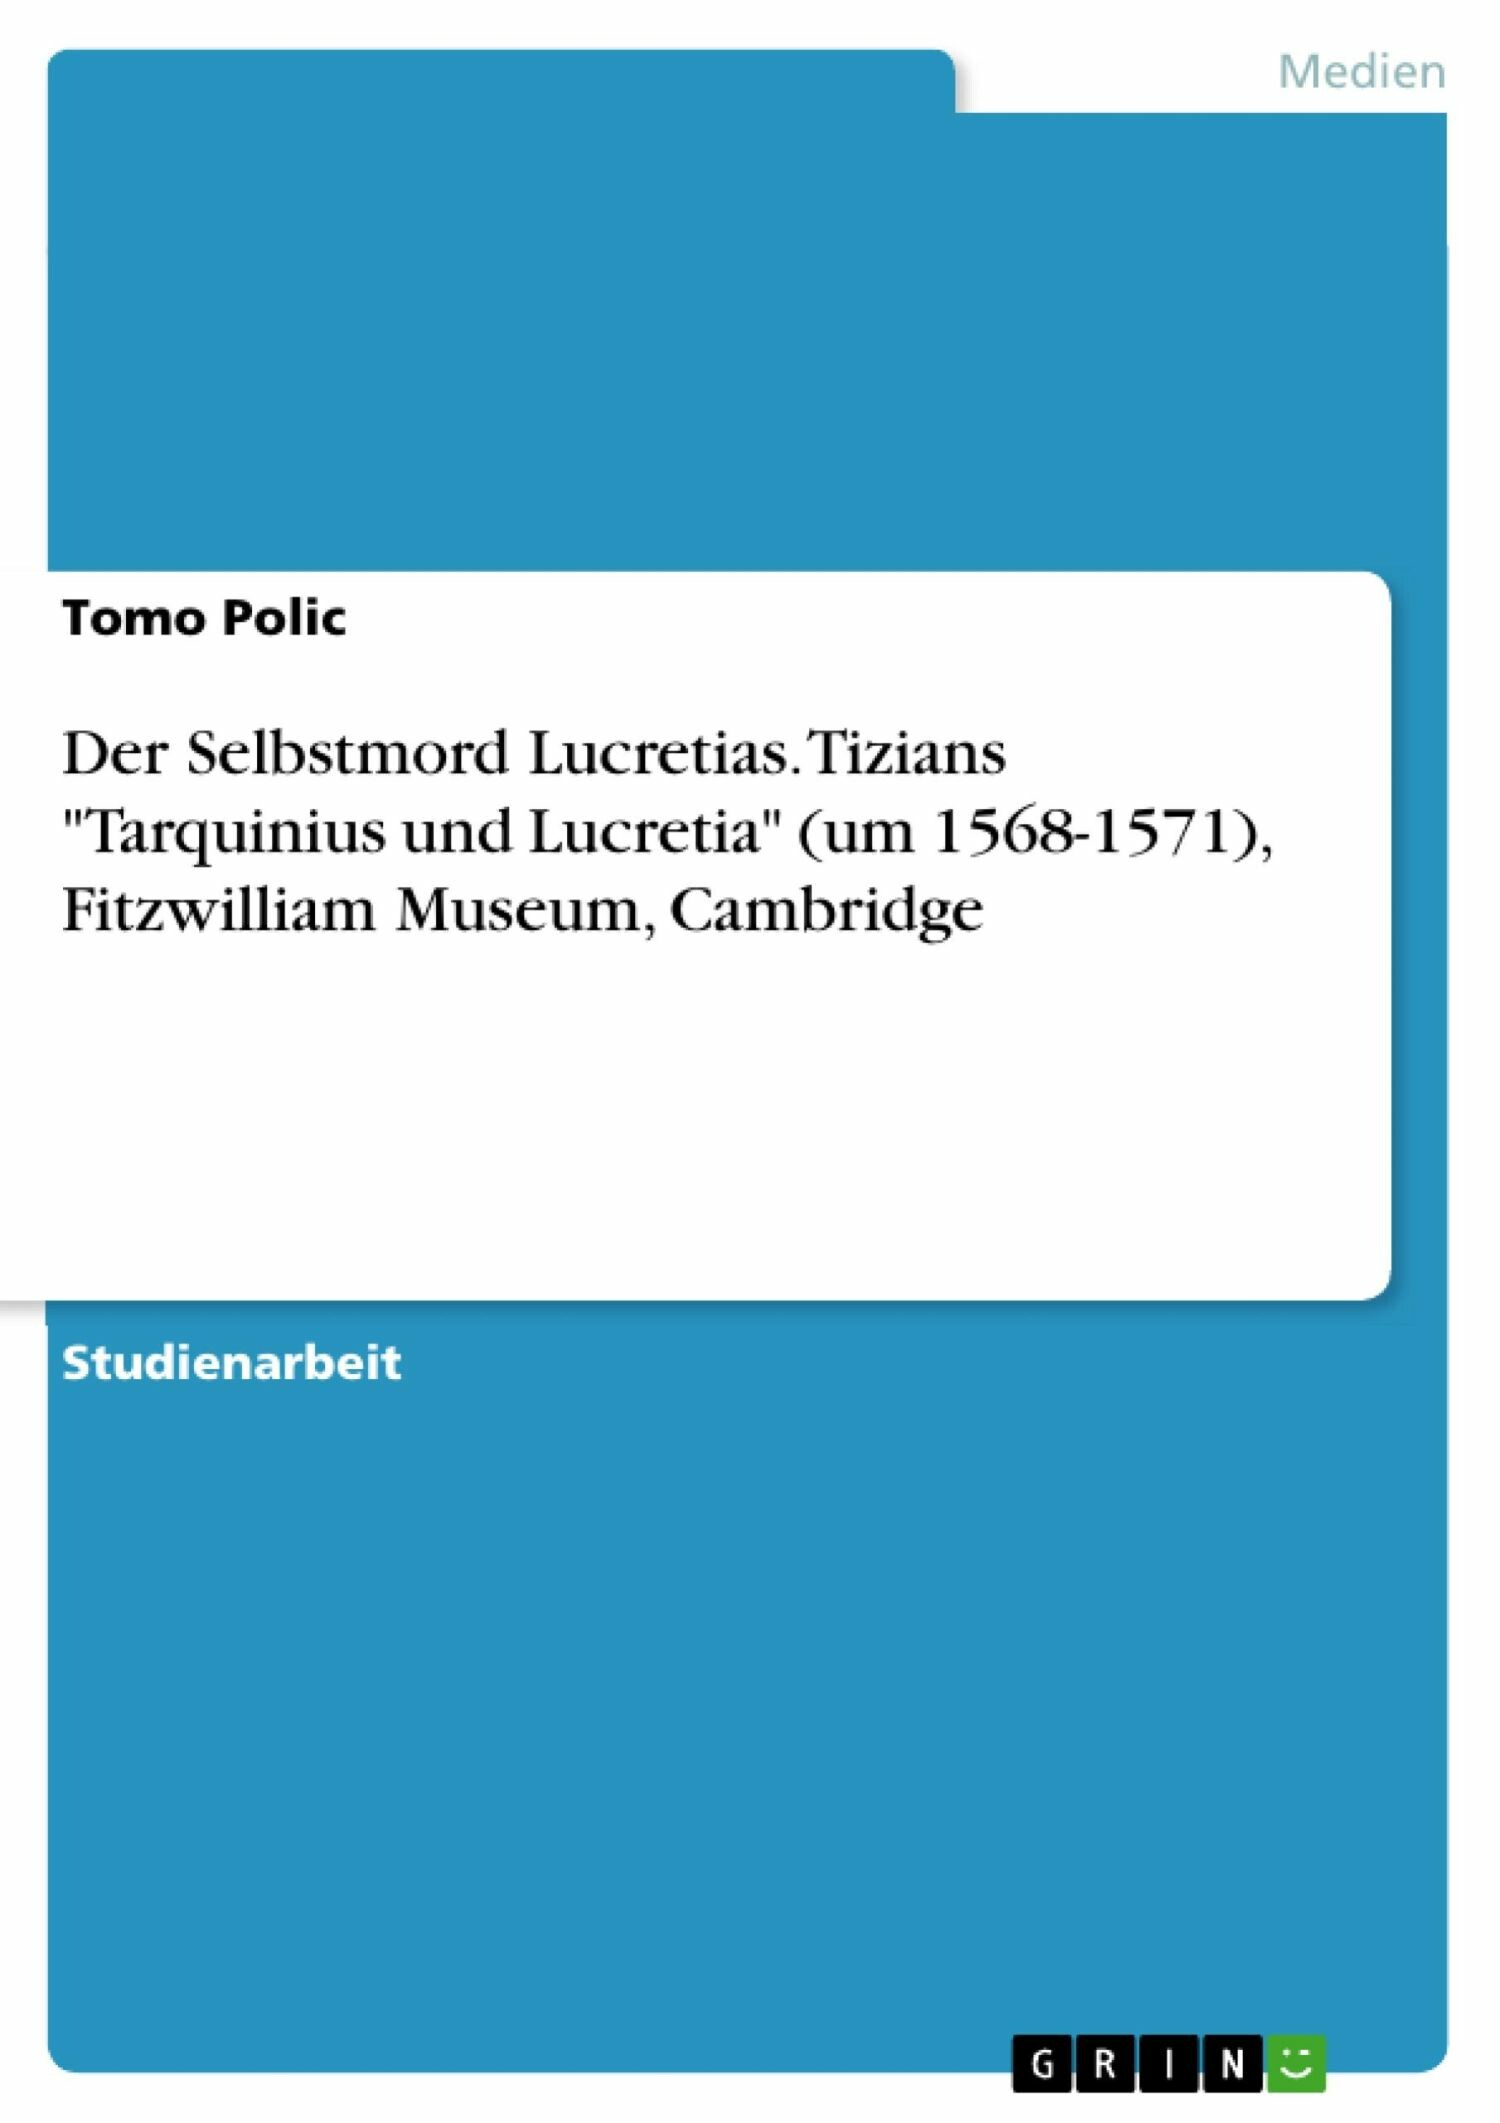 Der Selbstmord Lucretias. Tizians 'Tarquinius und Lucretia' (um 1568-1571), Fitzwilliam Museum, Cambridge